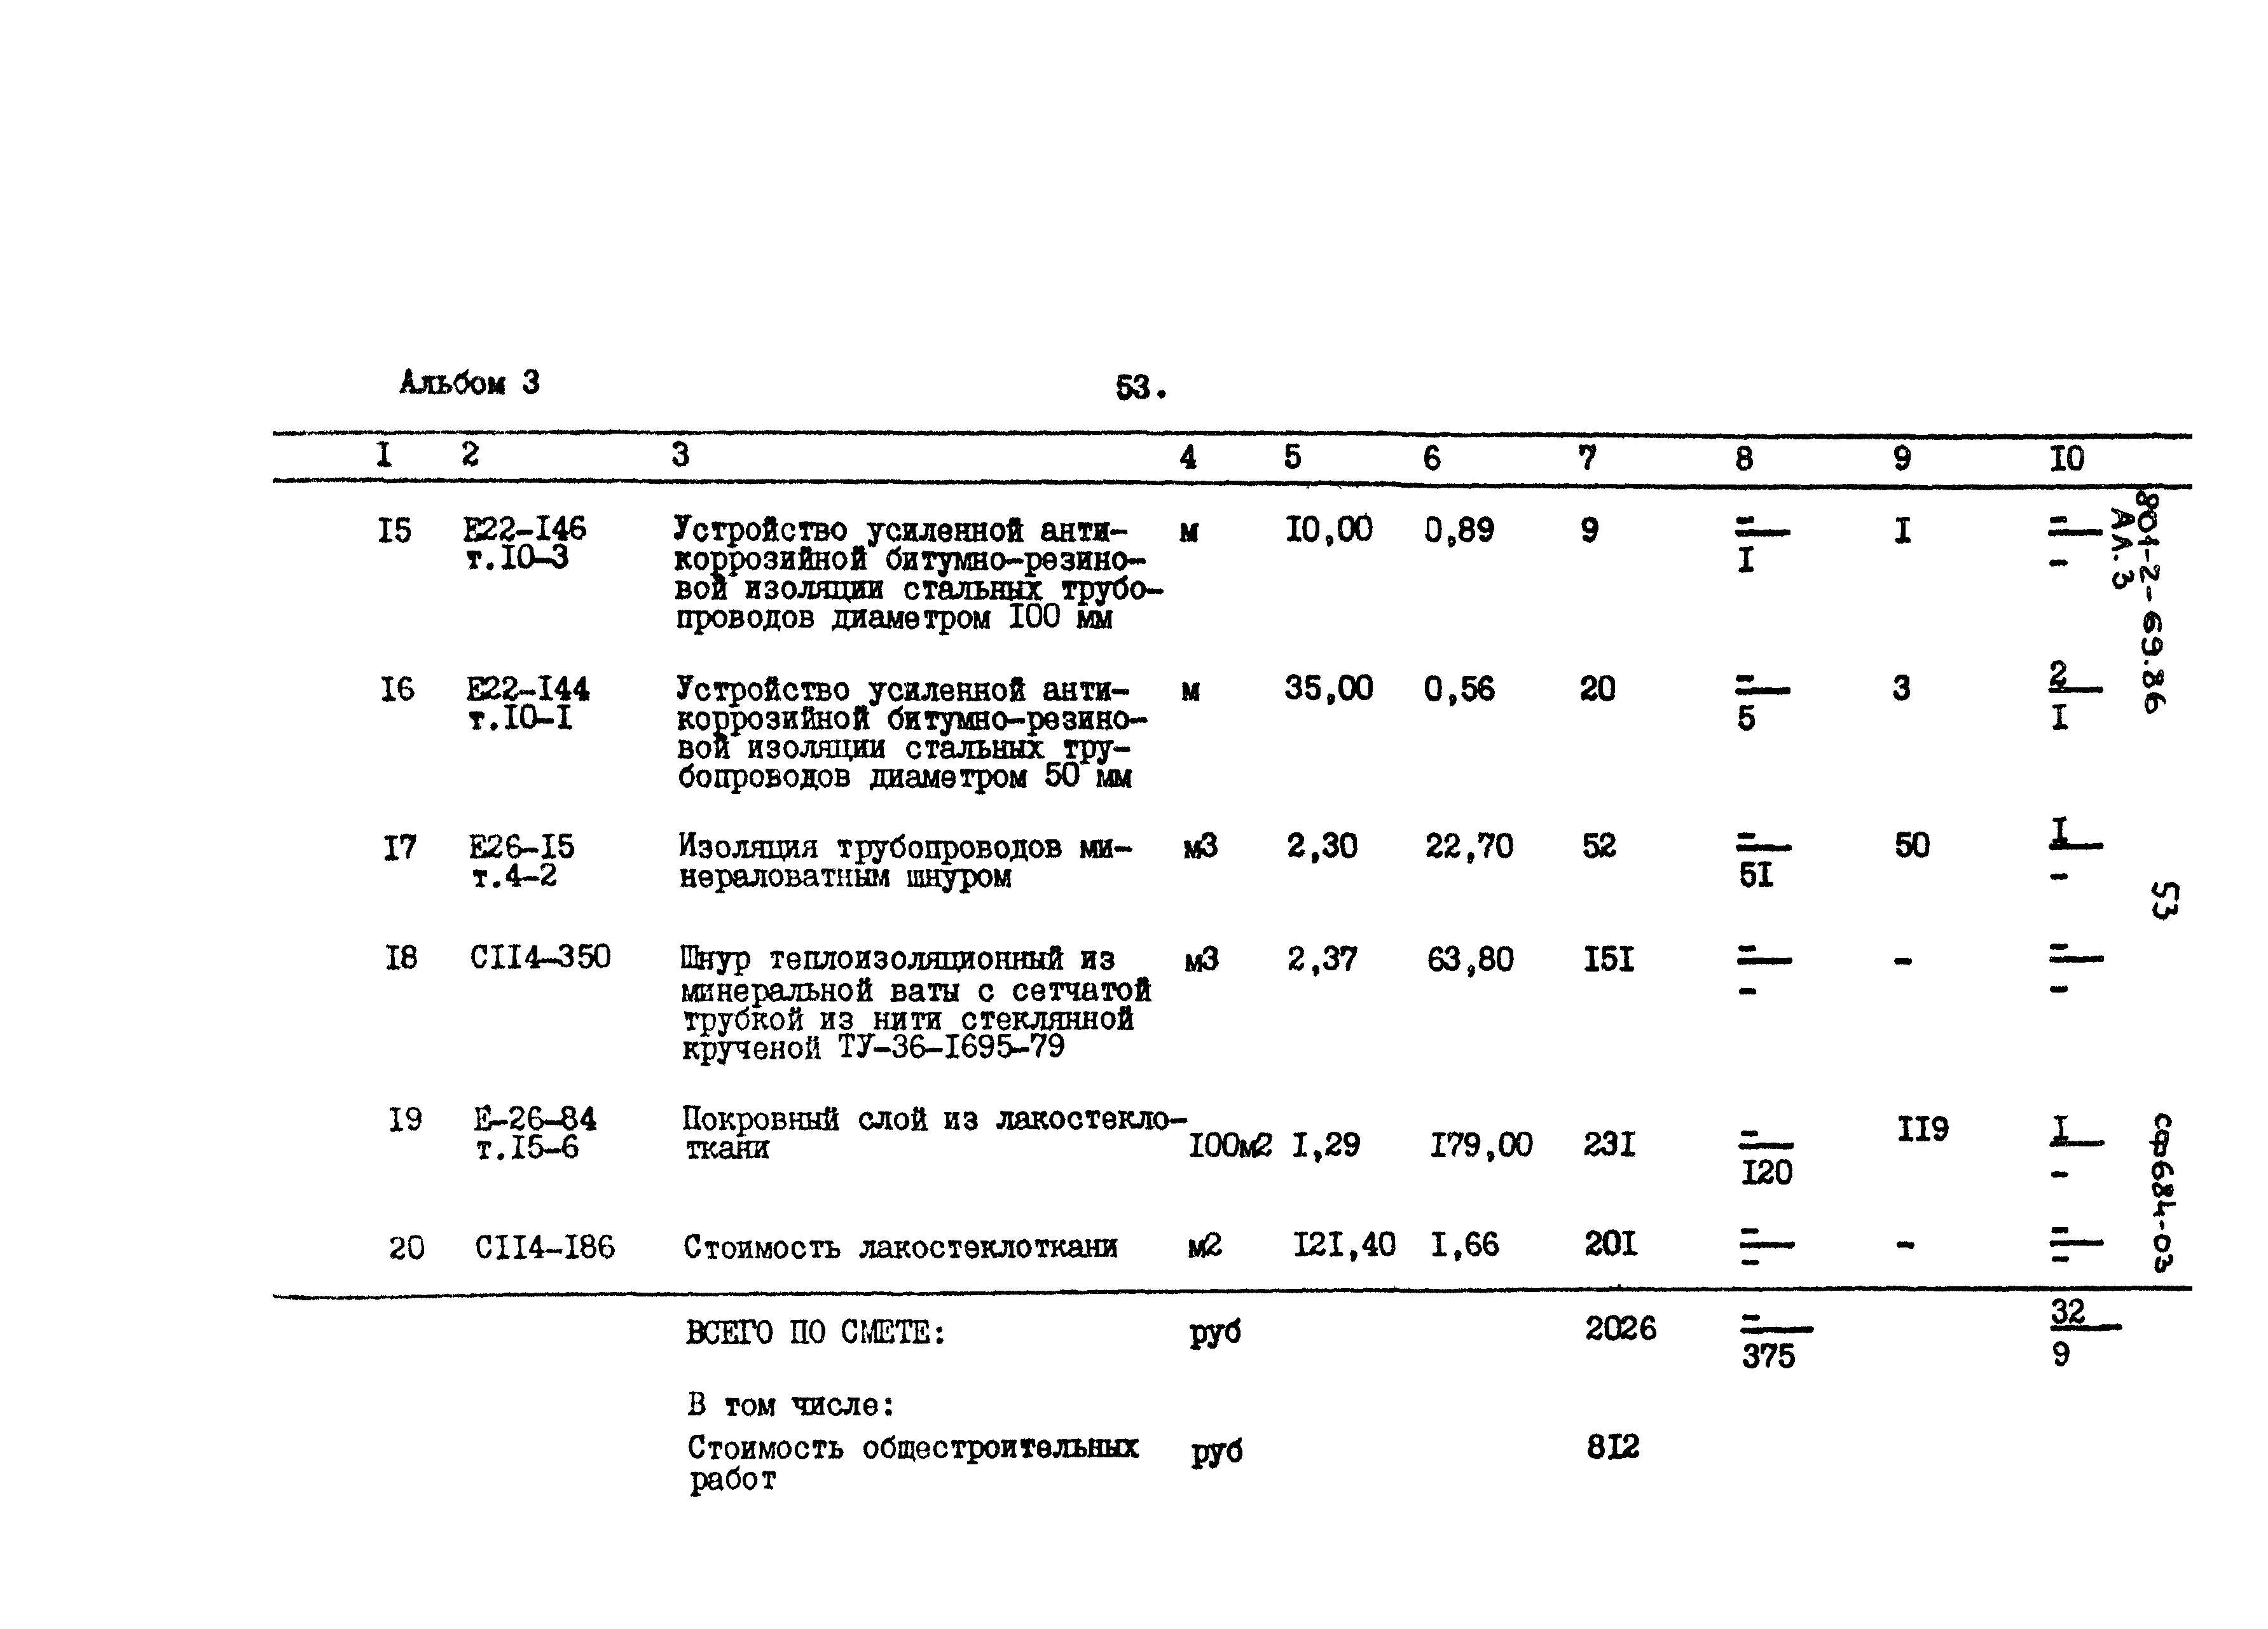 Типовой проект 801-2-69.86